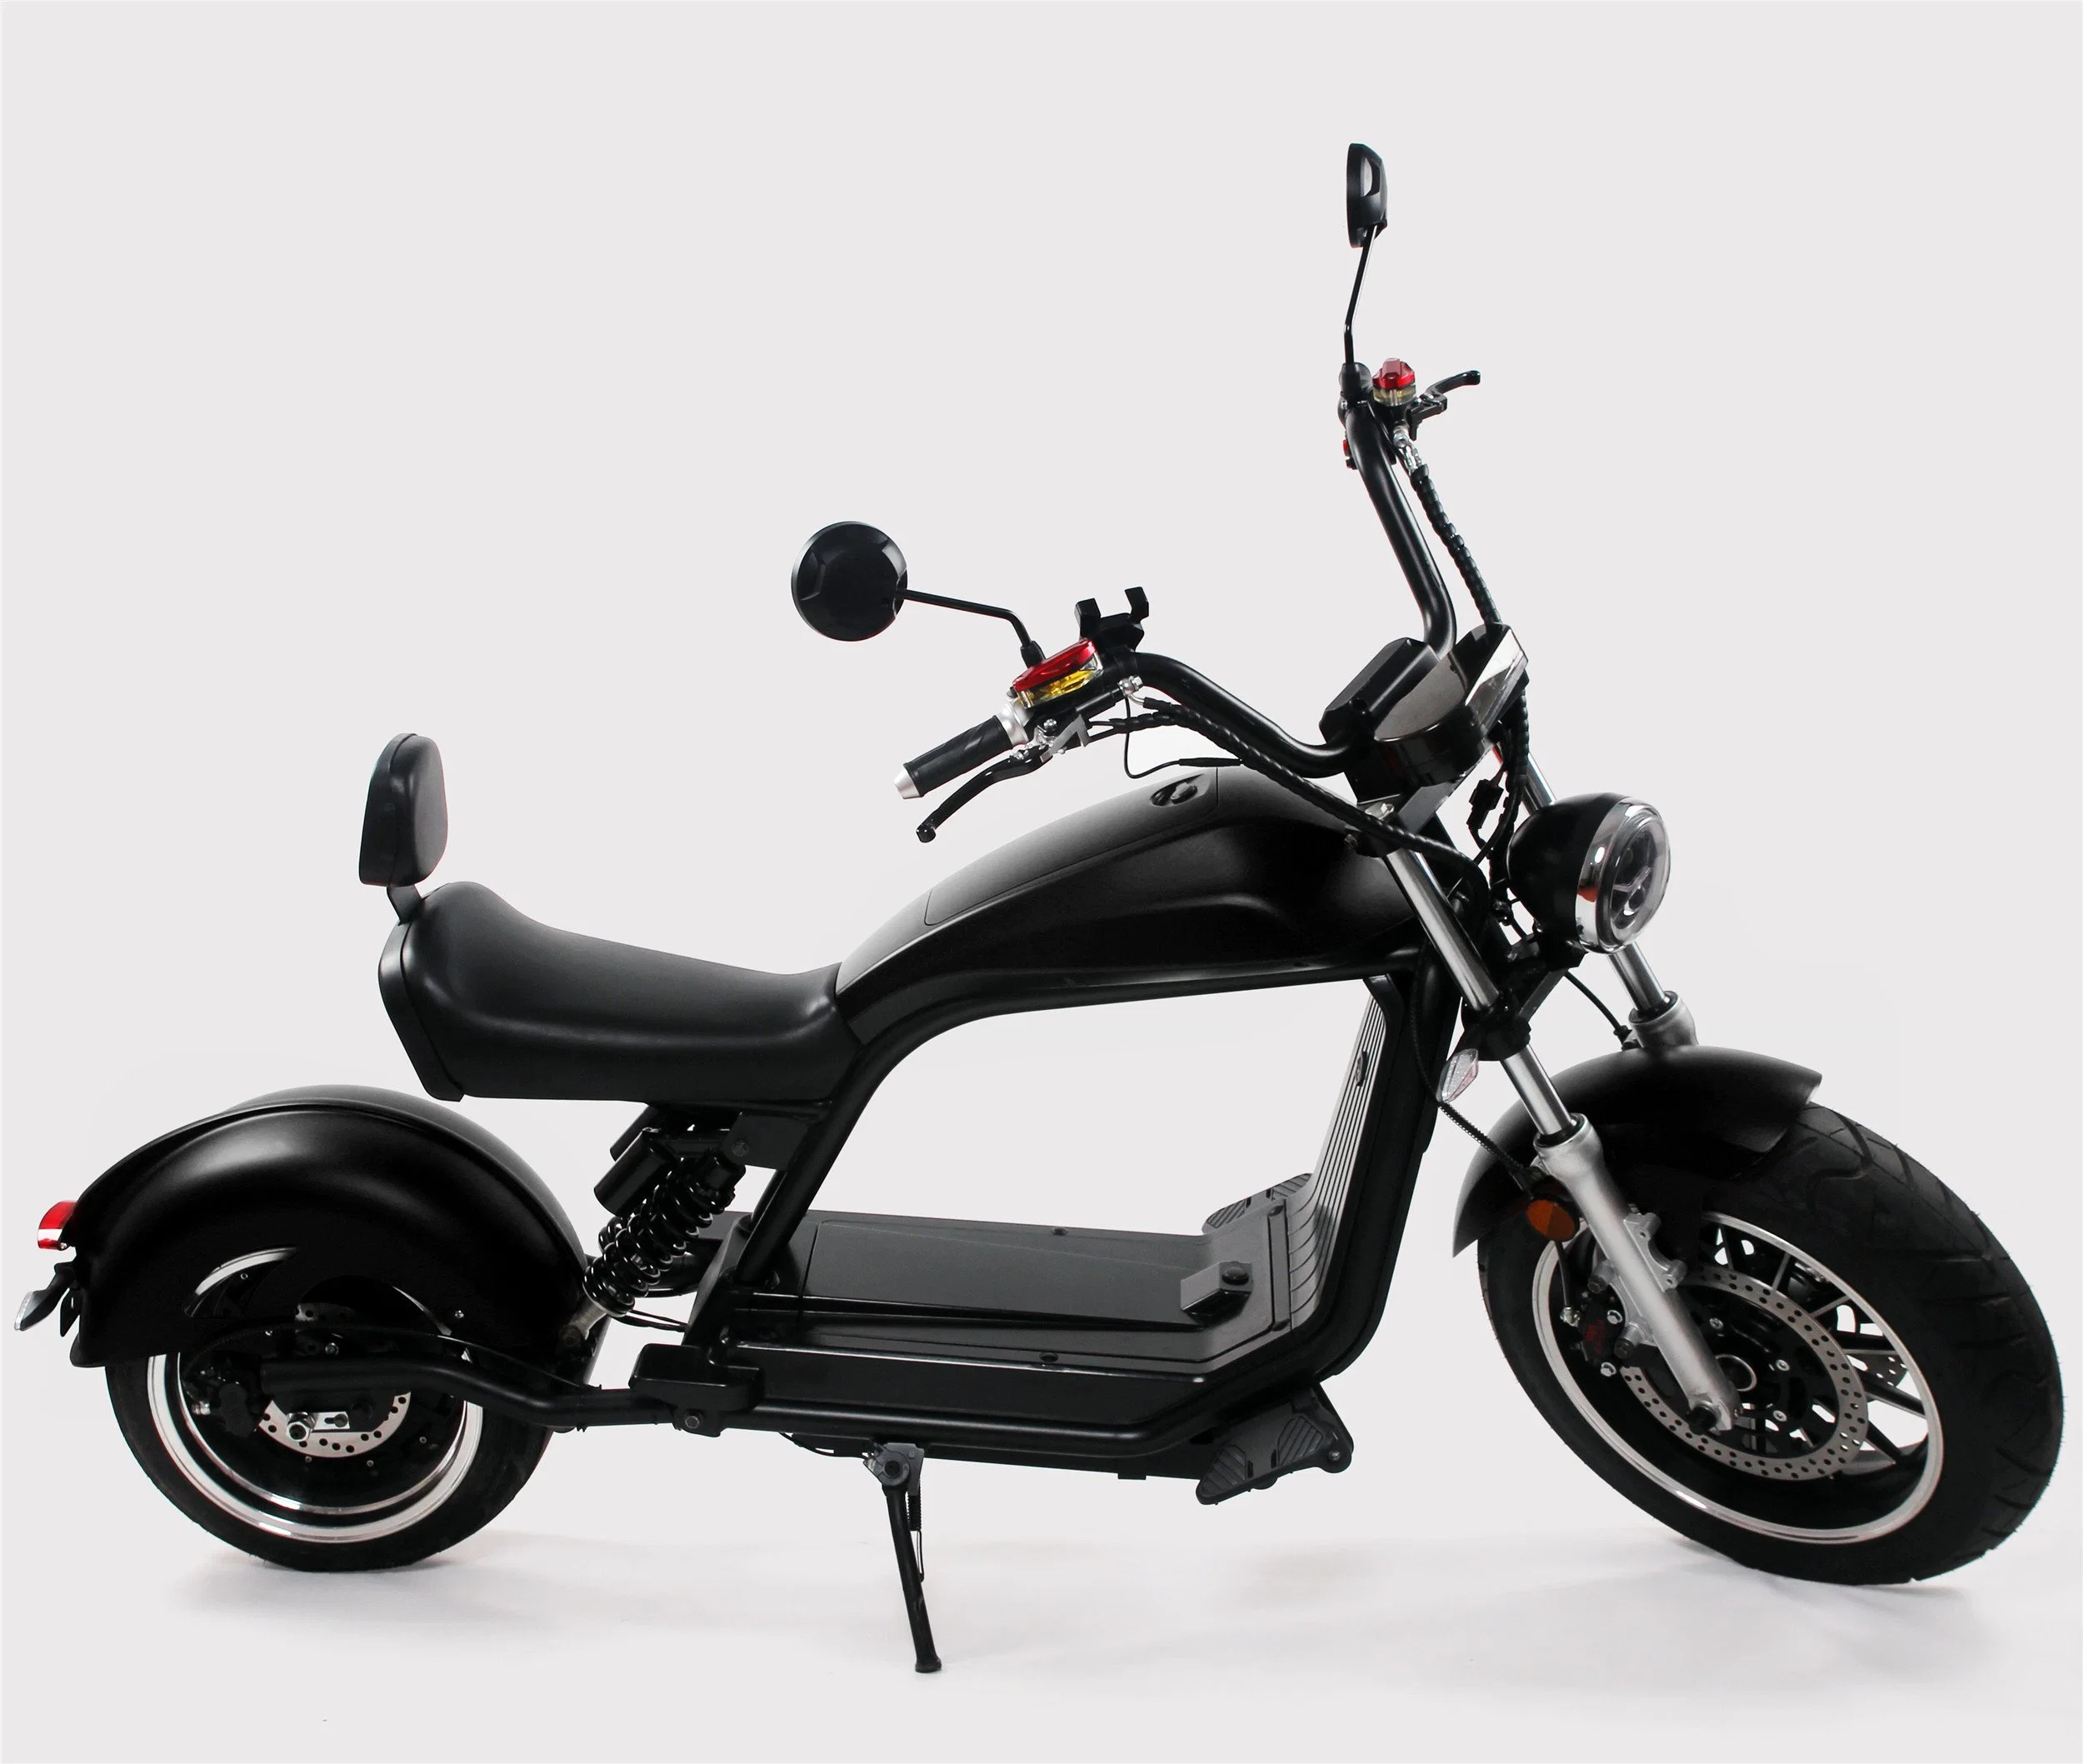 تصميم جديد إطارات كبيرة قوية دراجة رخيصة مع CE ل البالغون